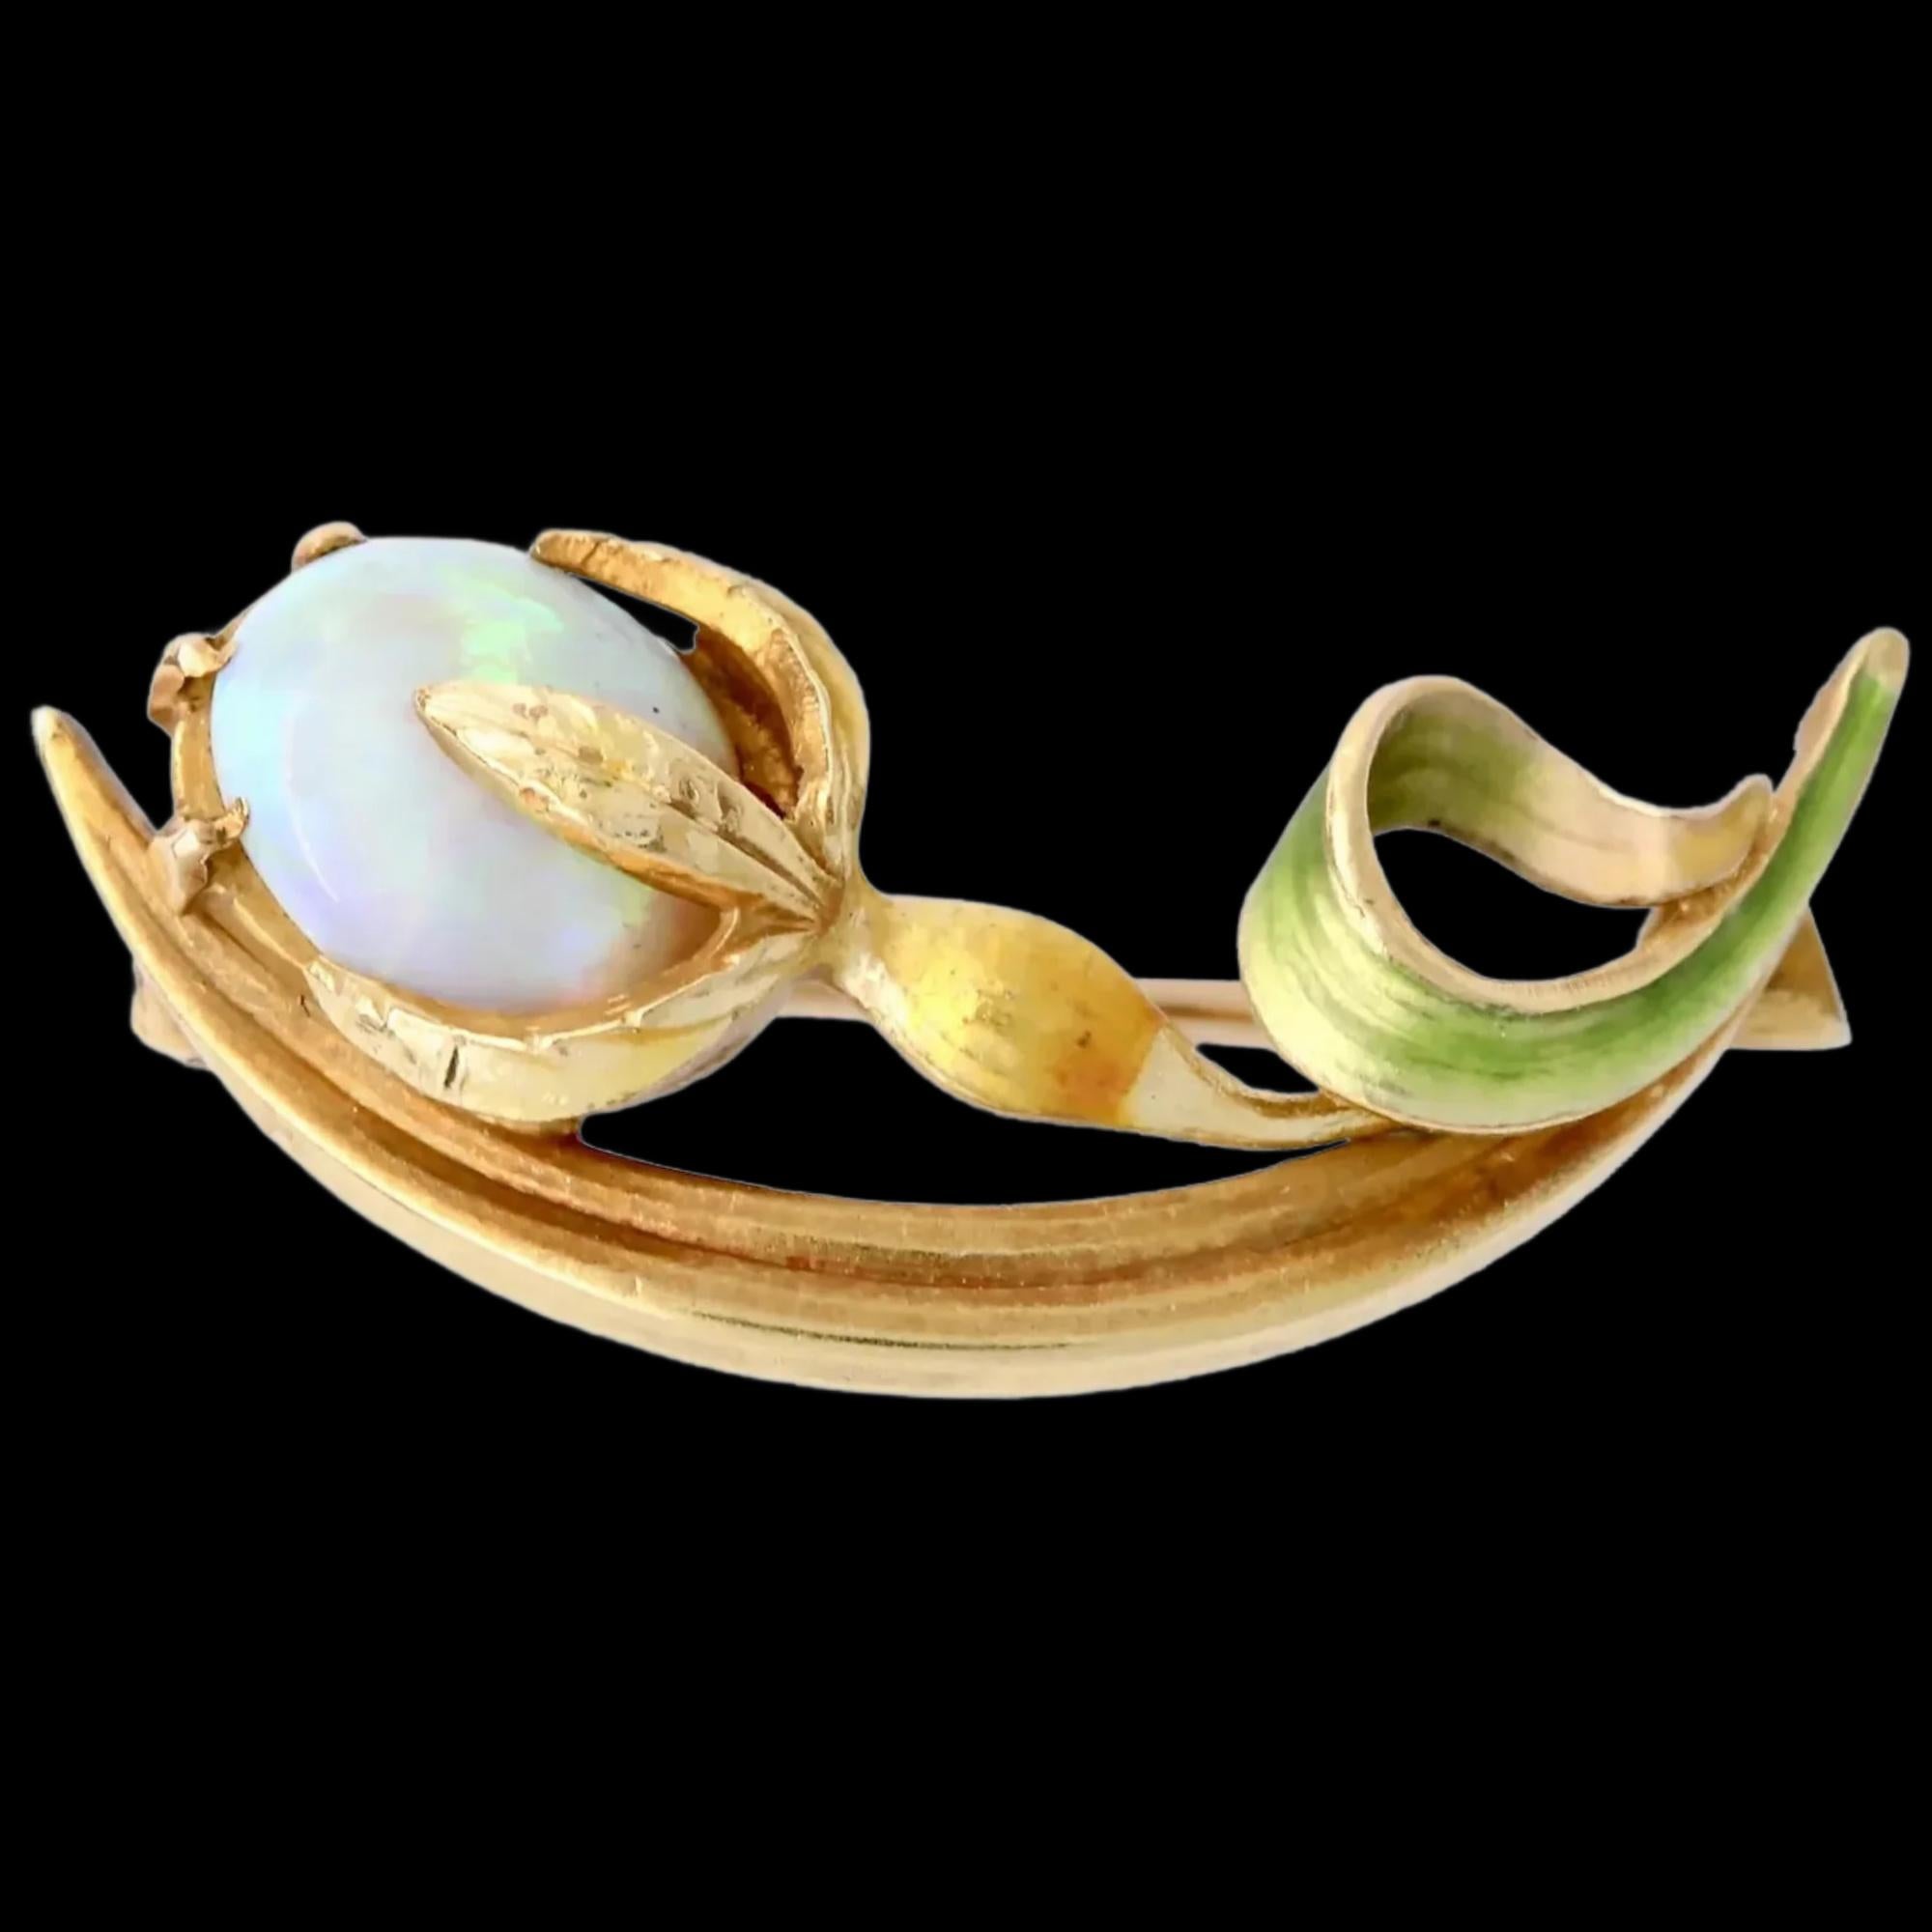 
Broche en forme de fleur émaillée, faite à la main, d'époque art nouveau, centrée sur une opale australienne.

Les feuilles et la tige de la fleur sont émaillées en émail translucide vert et doré.

Poinçonné en or 14 carats, avec la signature de